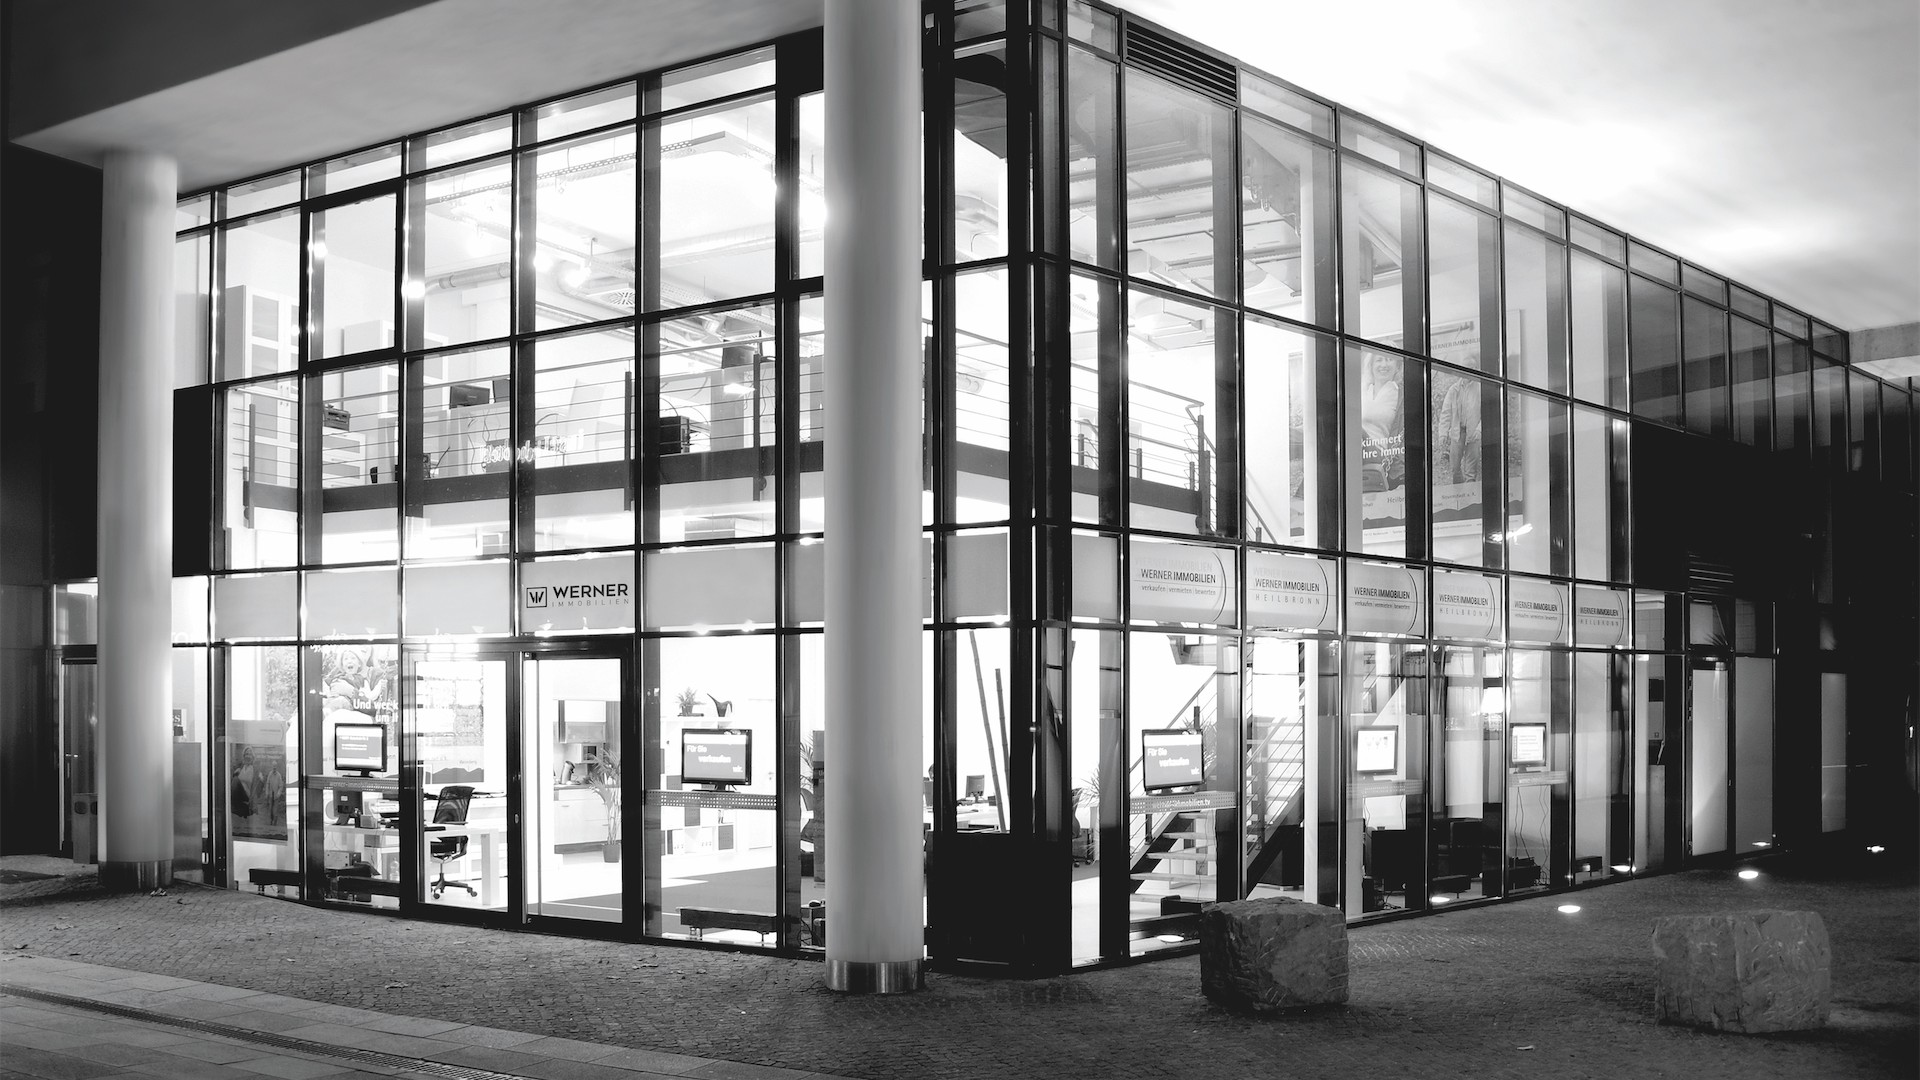 Ladenbild bei Nacht in Schwarz Weiß-Banner - Immobilienmakler in Heilbronn